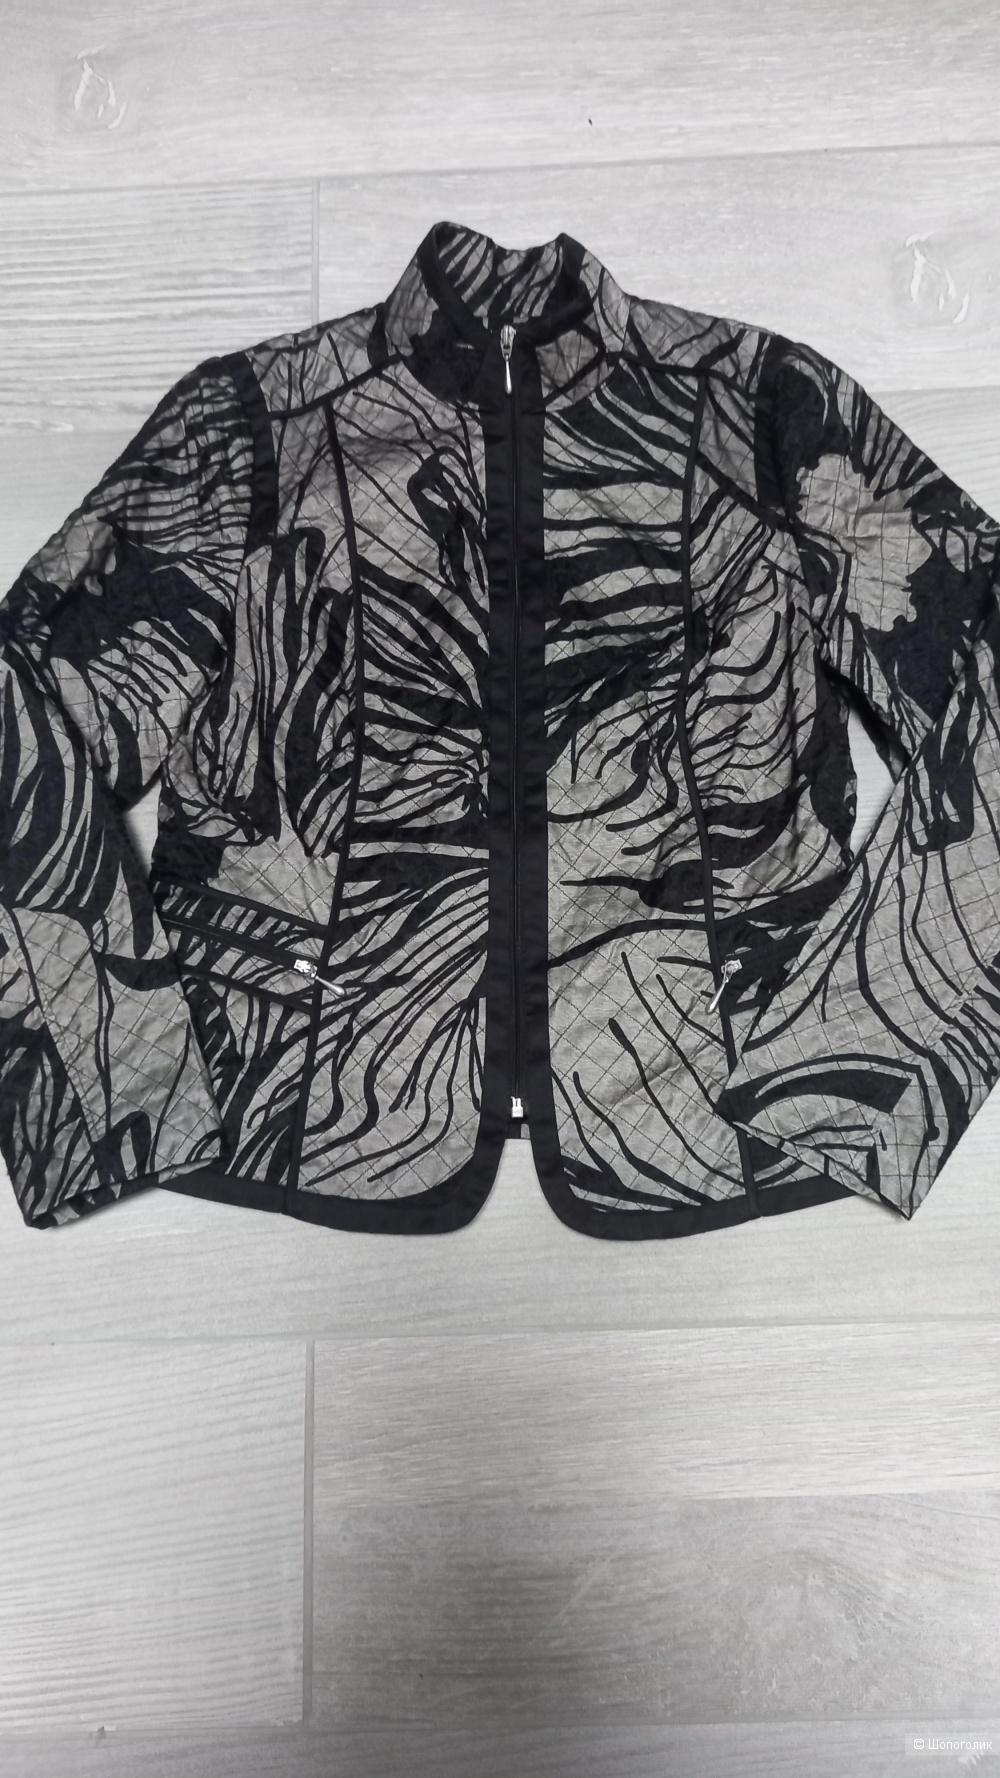 Куртка/ветровка bonita 44-46 размер